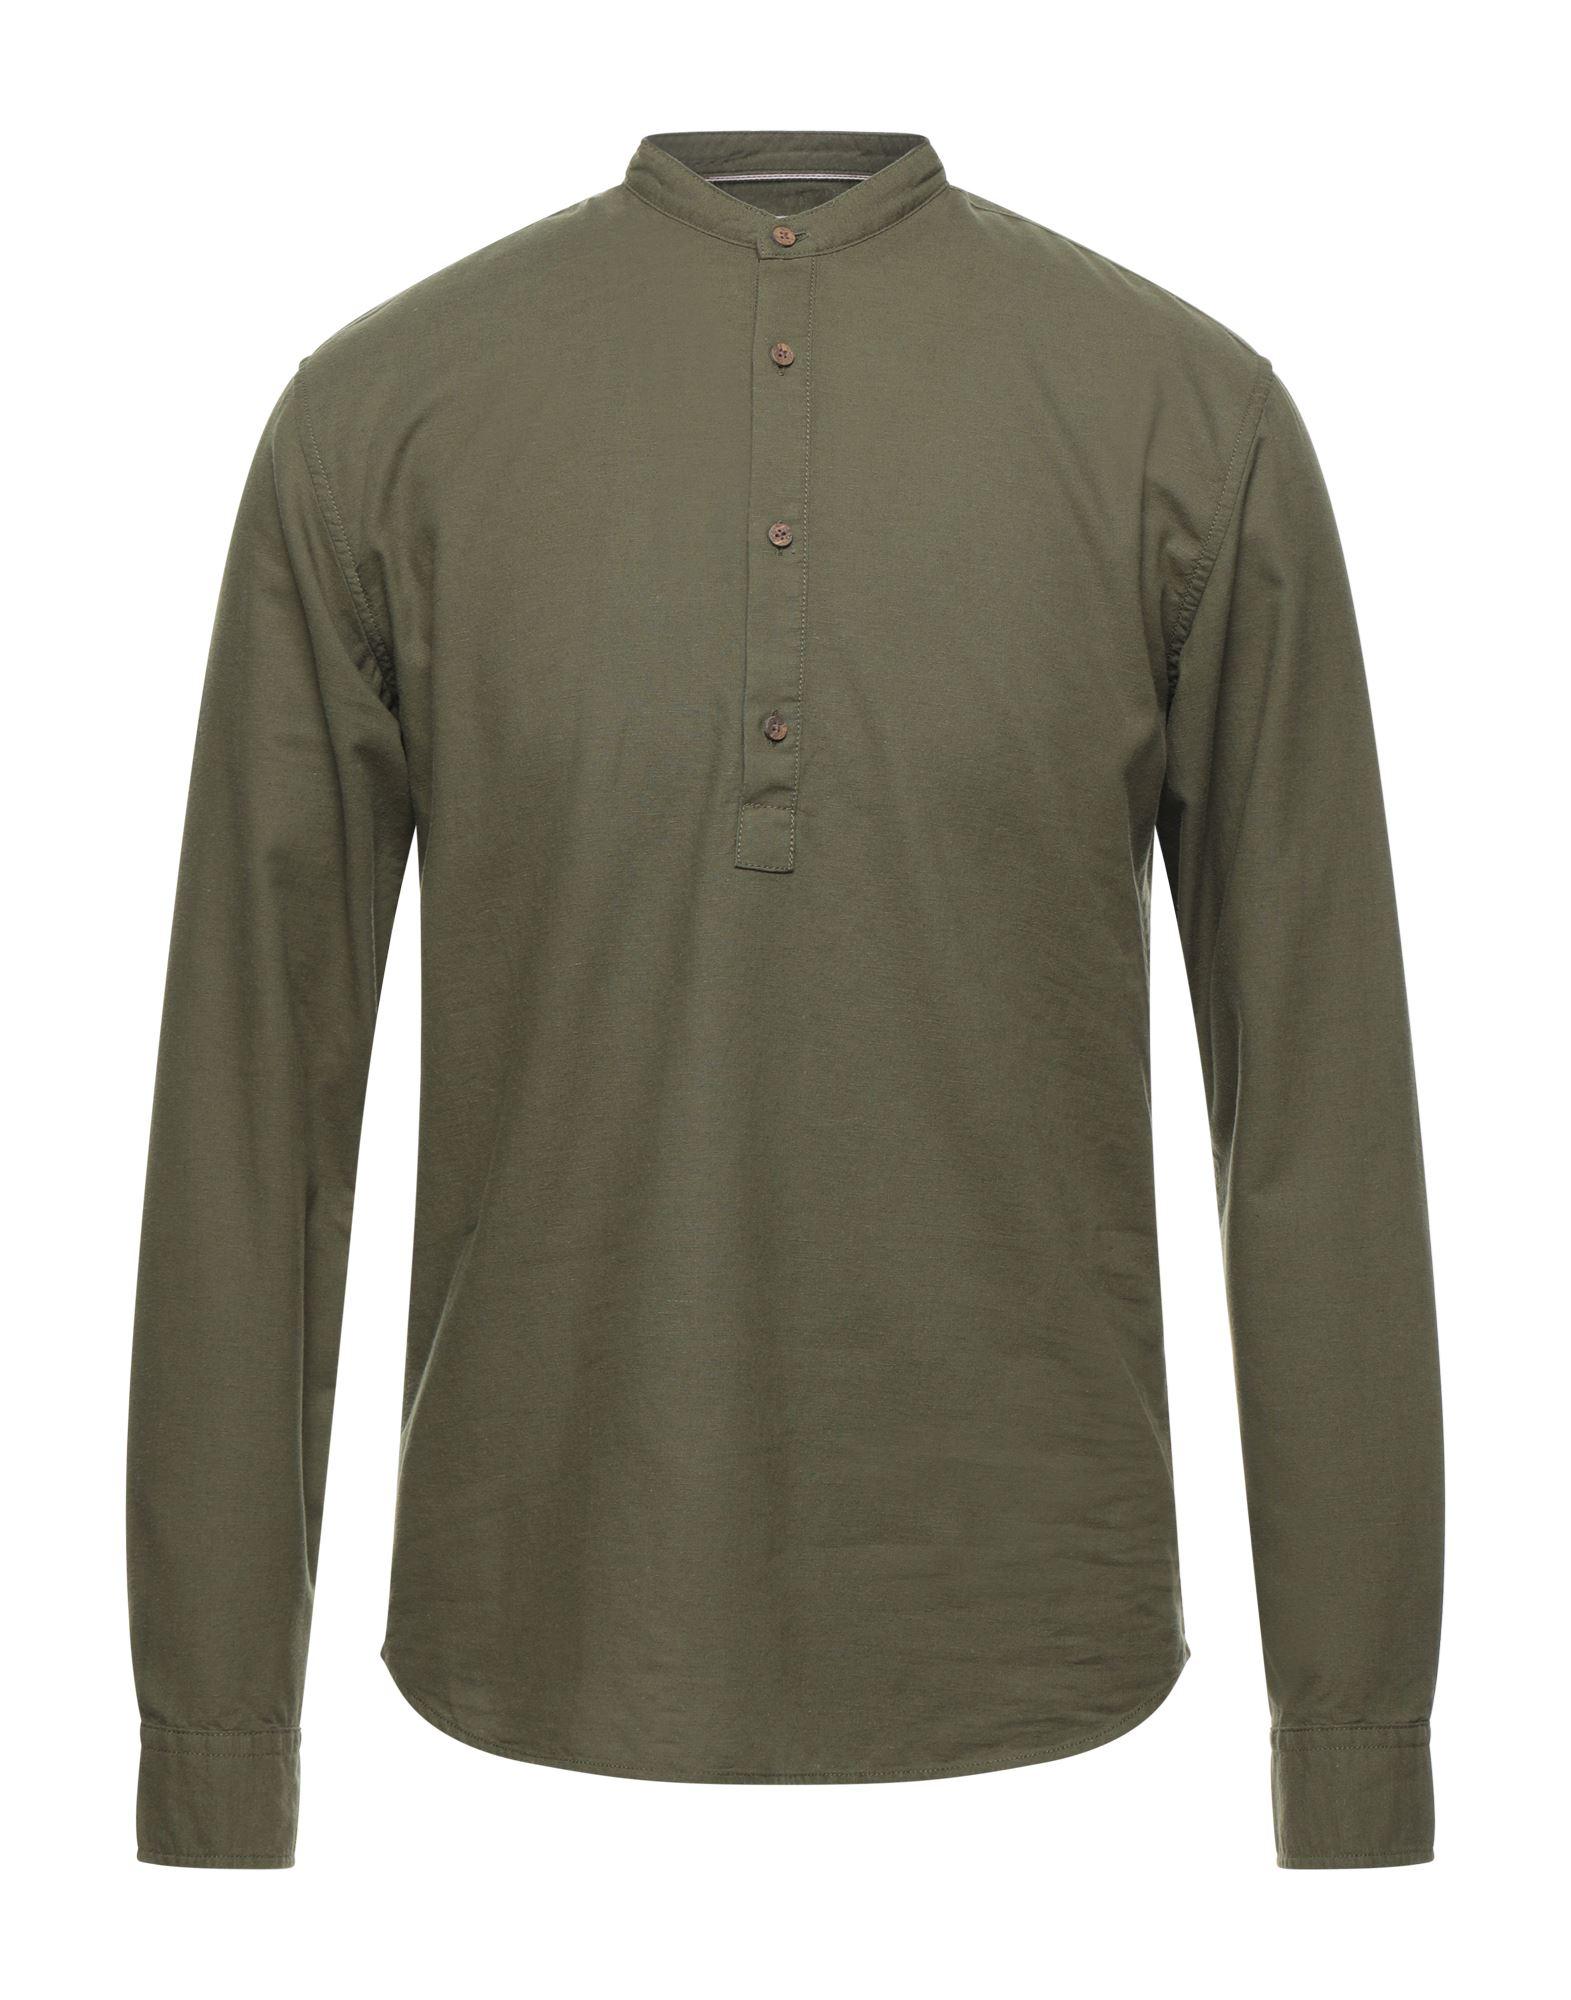 Jack & Jones Shirt in Military Green (Green) for Men - Lyst